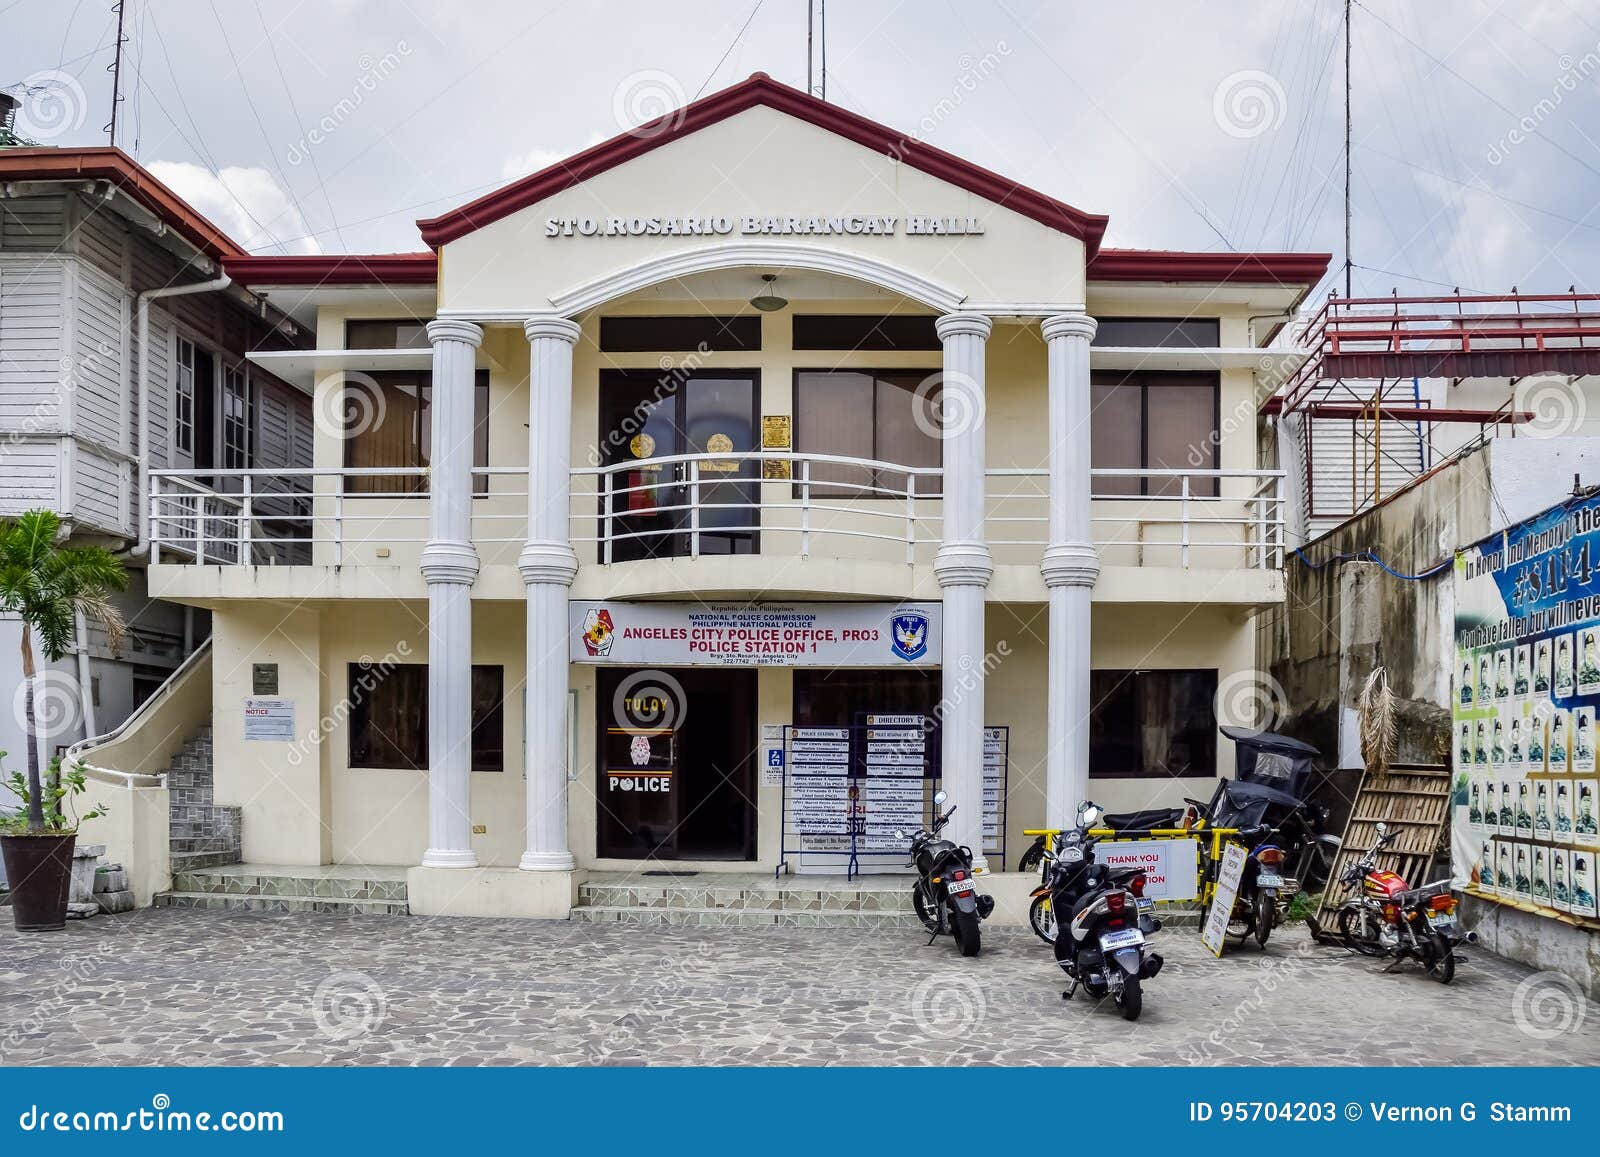 Barangay Hall Stock Photos - Free & Royalty-Free Stock Photos from